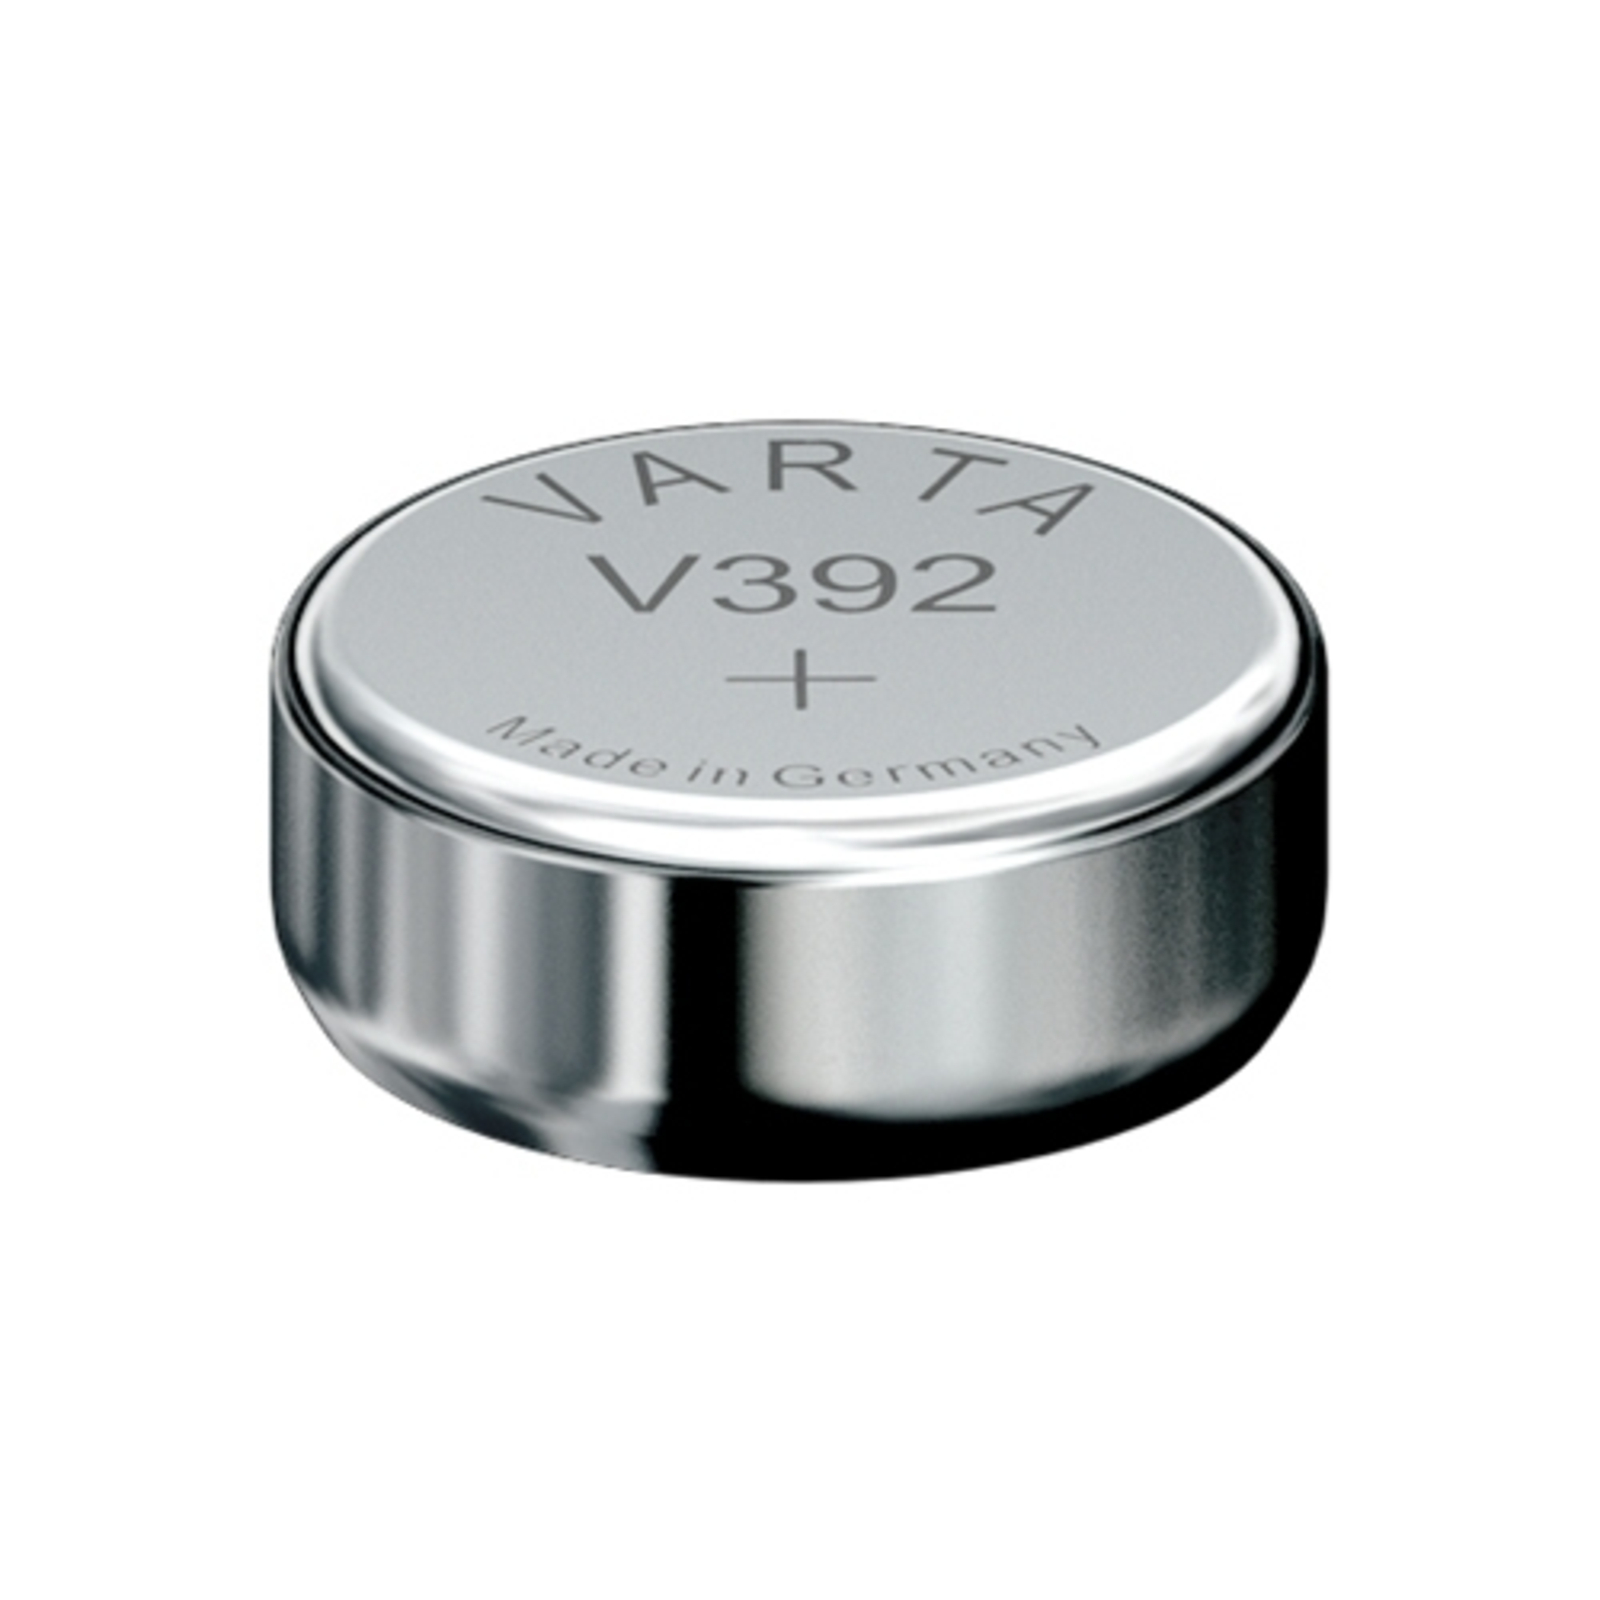 Mała bateria V392 VARTA